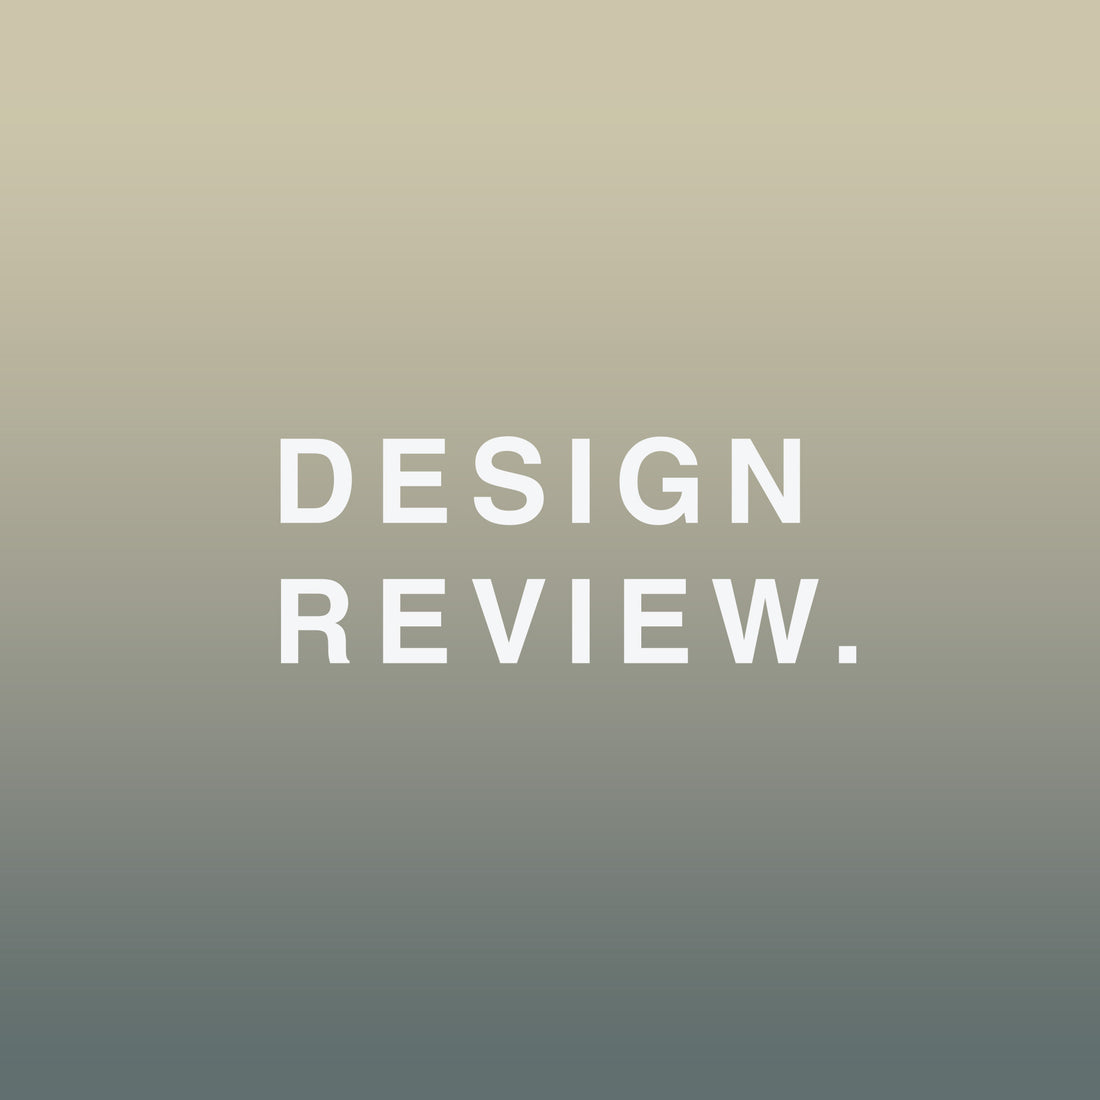 Design review.